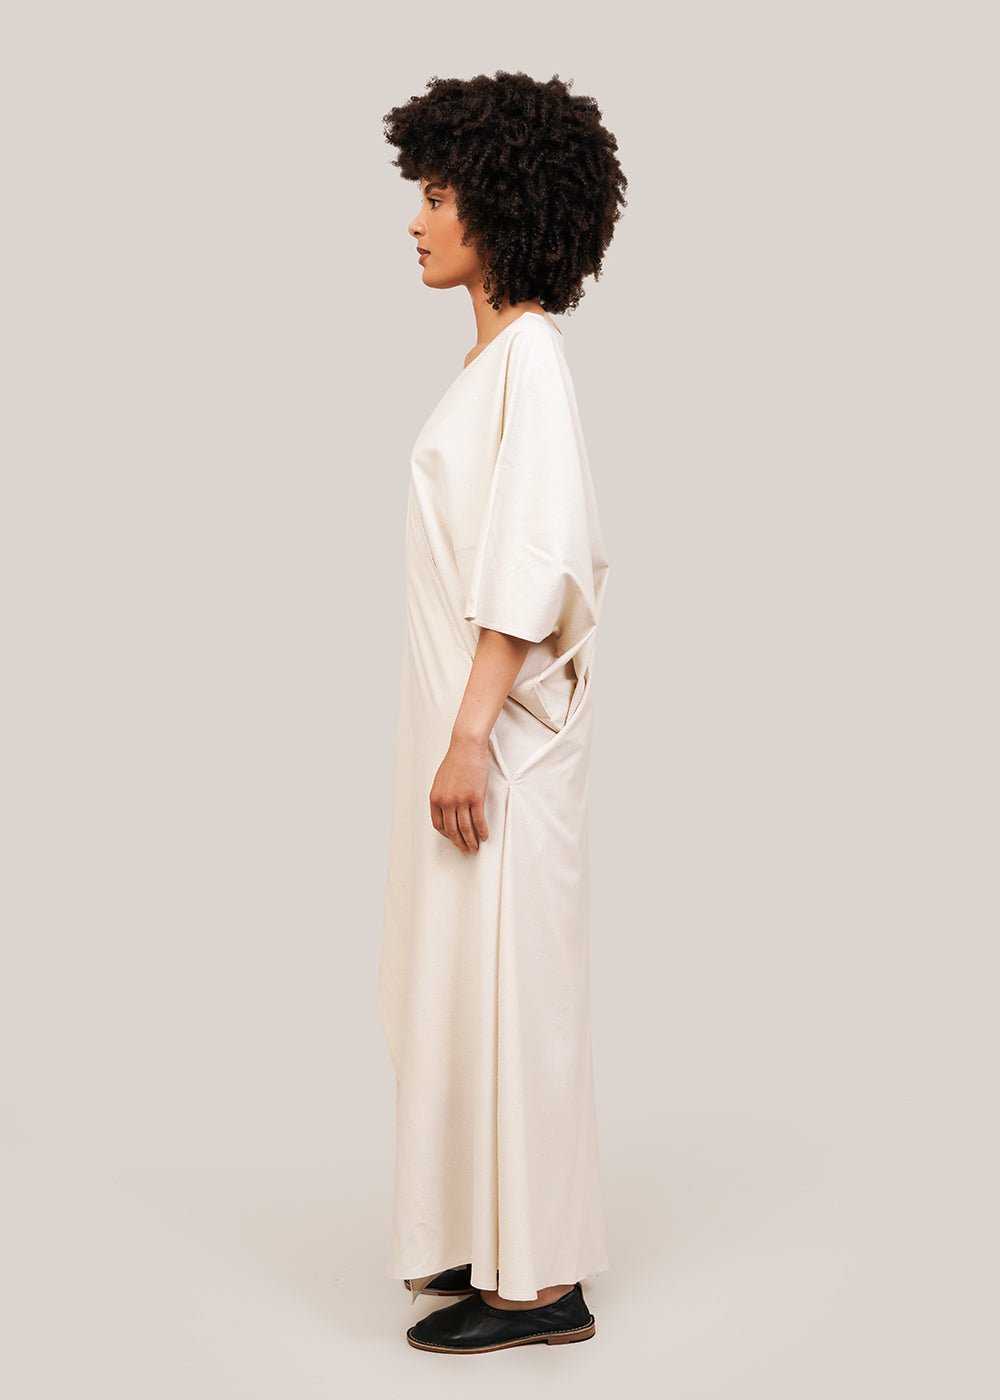 Baserange Undyed Venn Dress - New Classics Studios Sustainable Ethical Fashion Canada